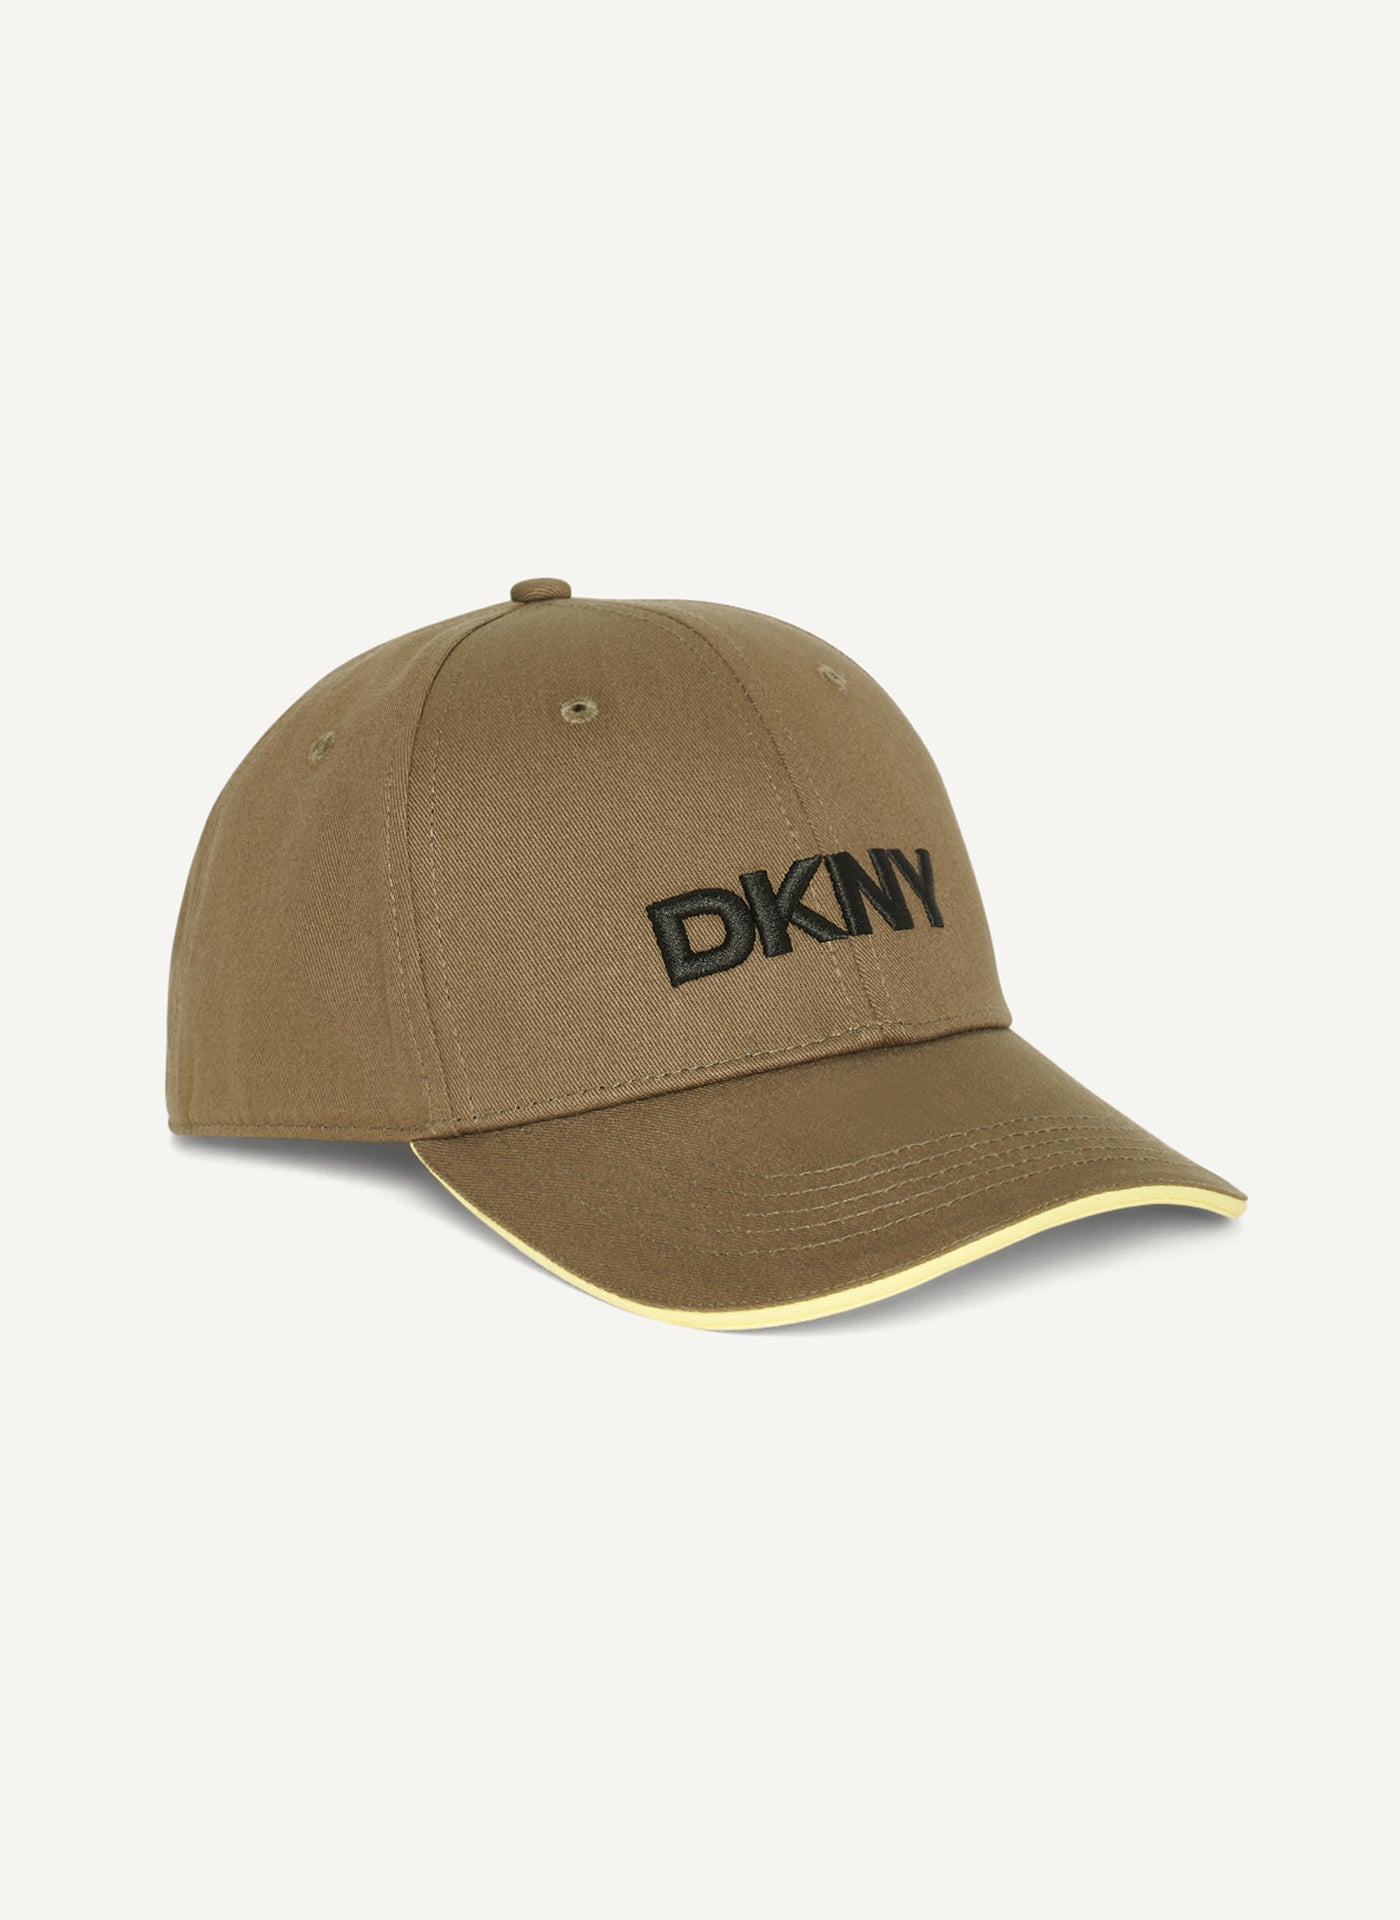 DKNY LOGO BASEBALL HAT